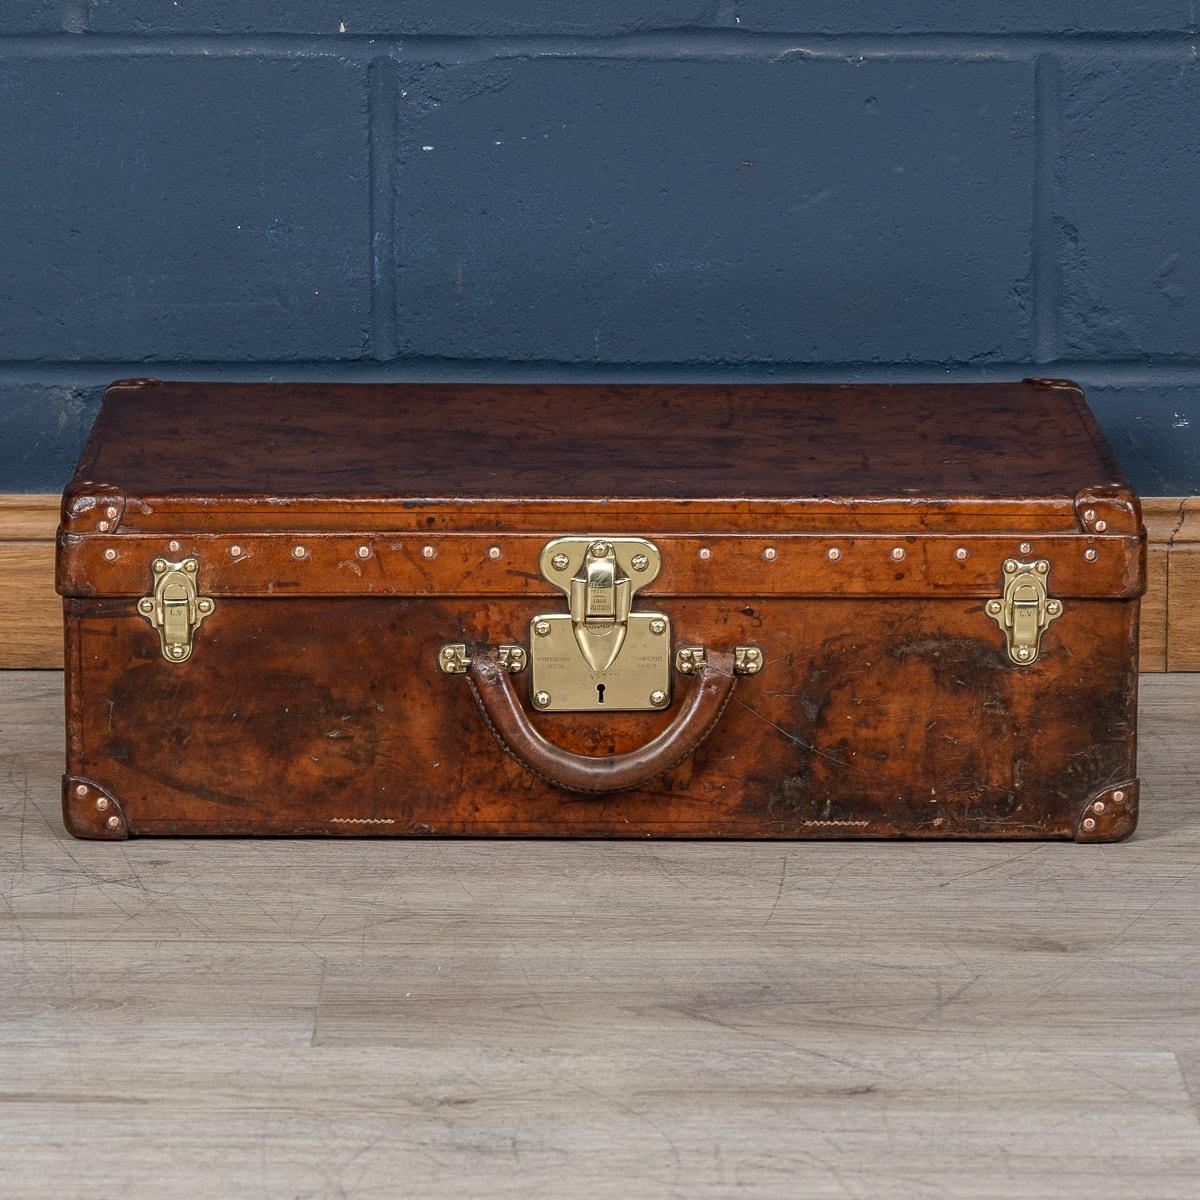 Une valise Louis Vuitton très inhabituelle et exceptionnellement rare, datant des premières années du 20e siècle, se distingue non pas par la toile du monogramme mondialement connu, mais par un revêtement distinctif fabriqué à partir d'un morceau